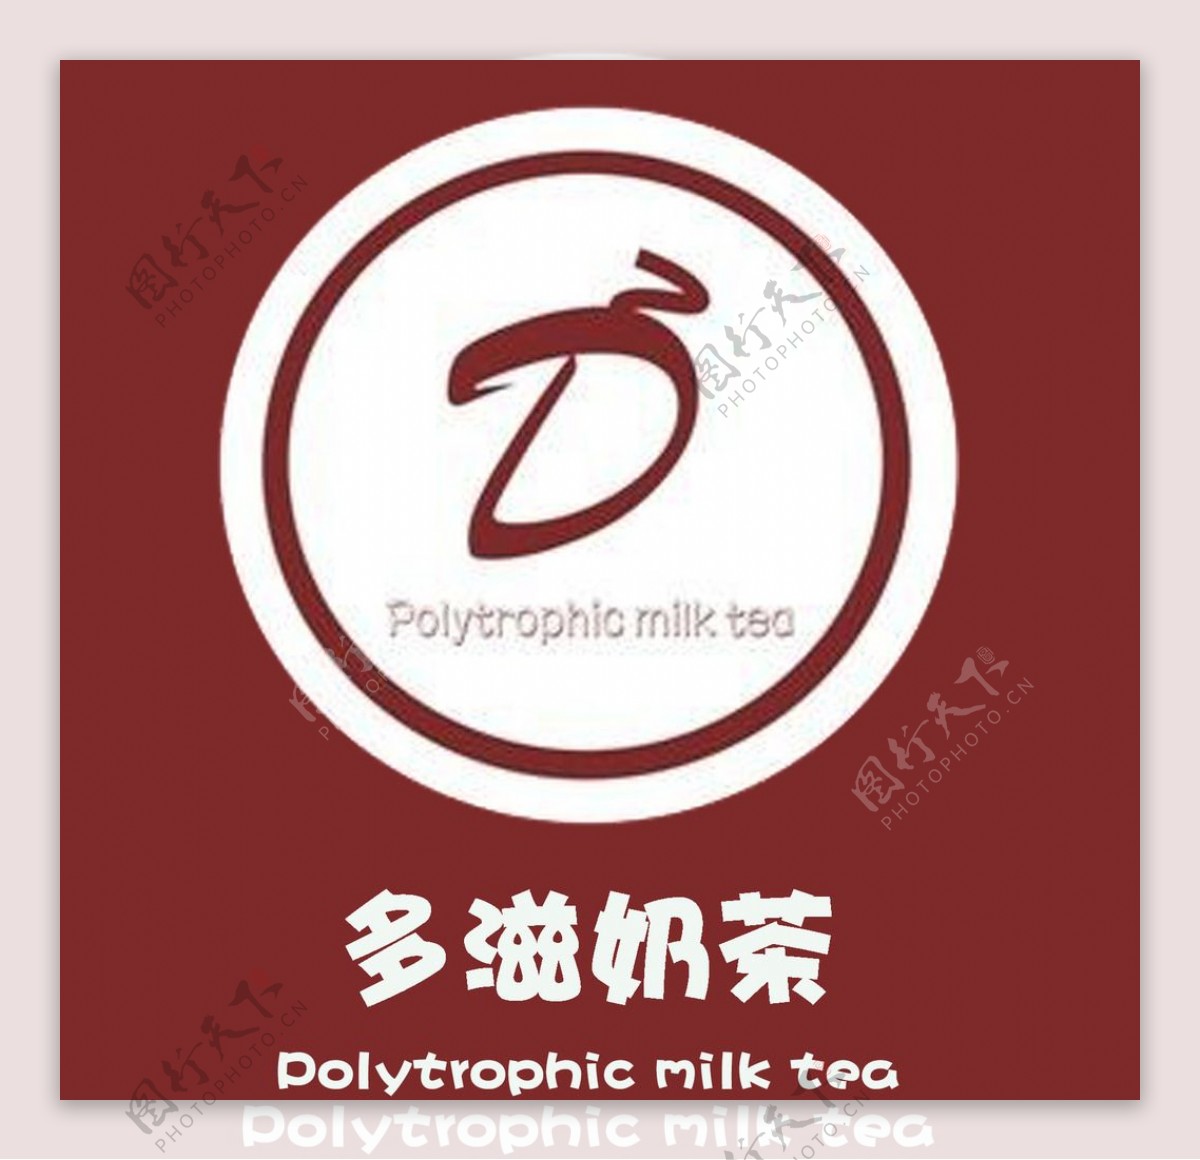 奶茶品牌图案图片